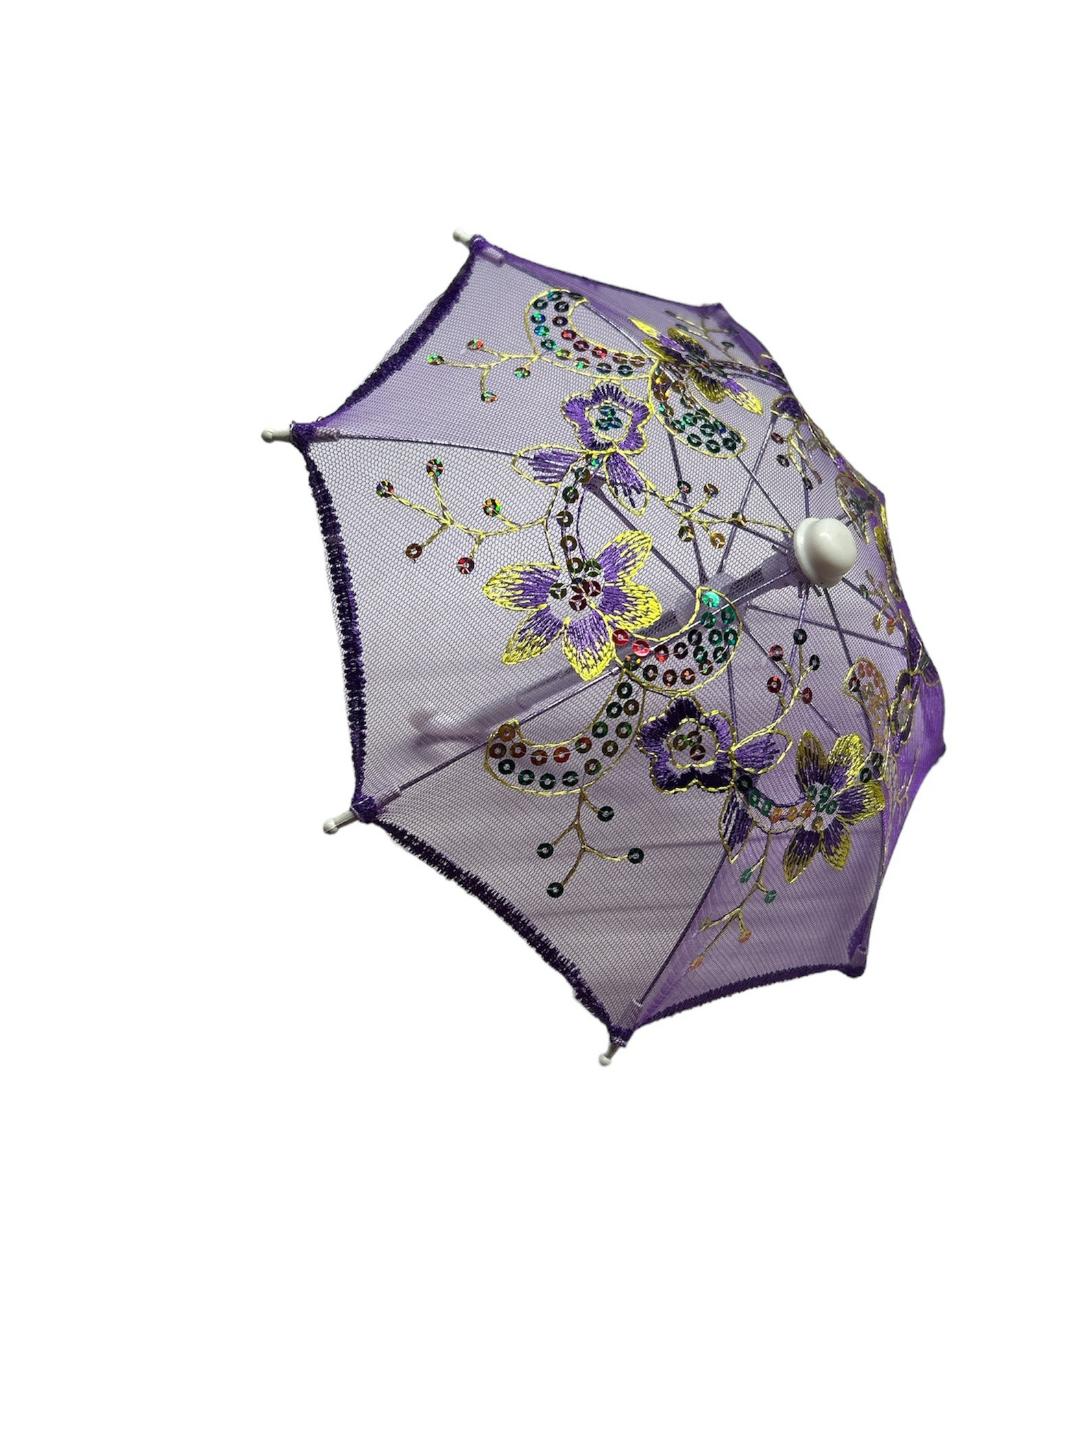 mini umbrella 2nd pic